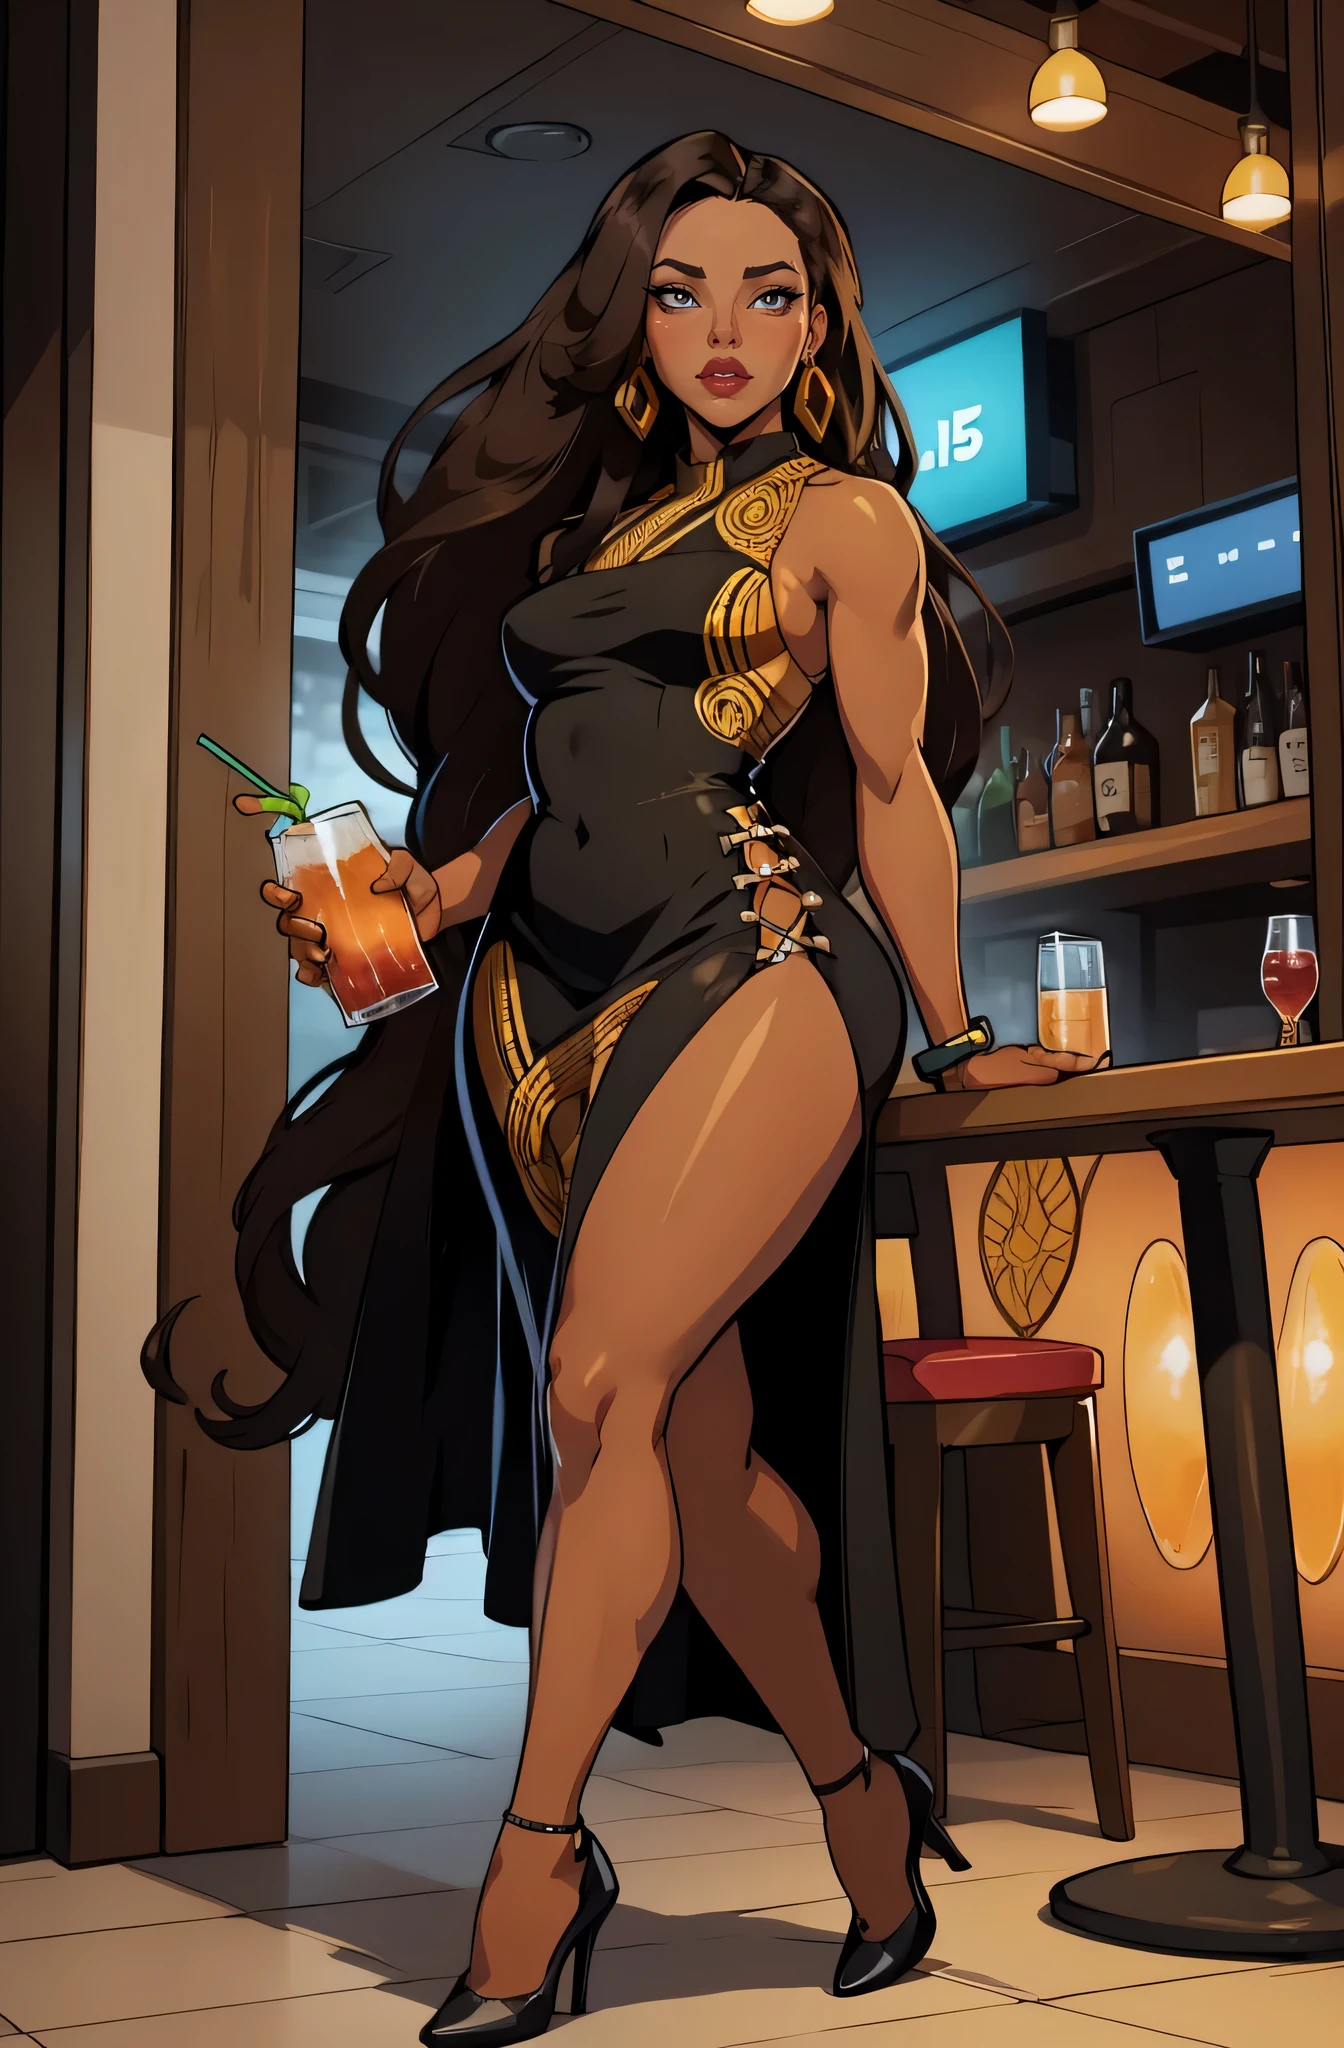 在酒吧背景喝鸡尾酒 (一名 35 岁女性) 古铜色的肌肤, 独自的, 1 名女孩, 肖像, 非洲长发, 非常详细, 现代风格, 直接观察, 全身穿着黑色连衣裙